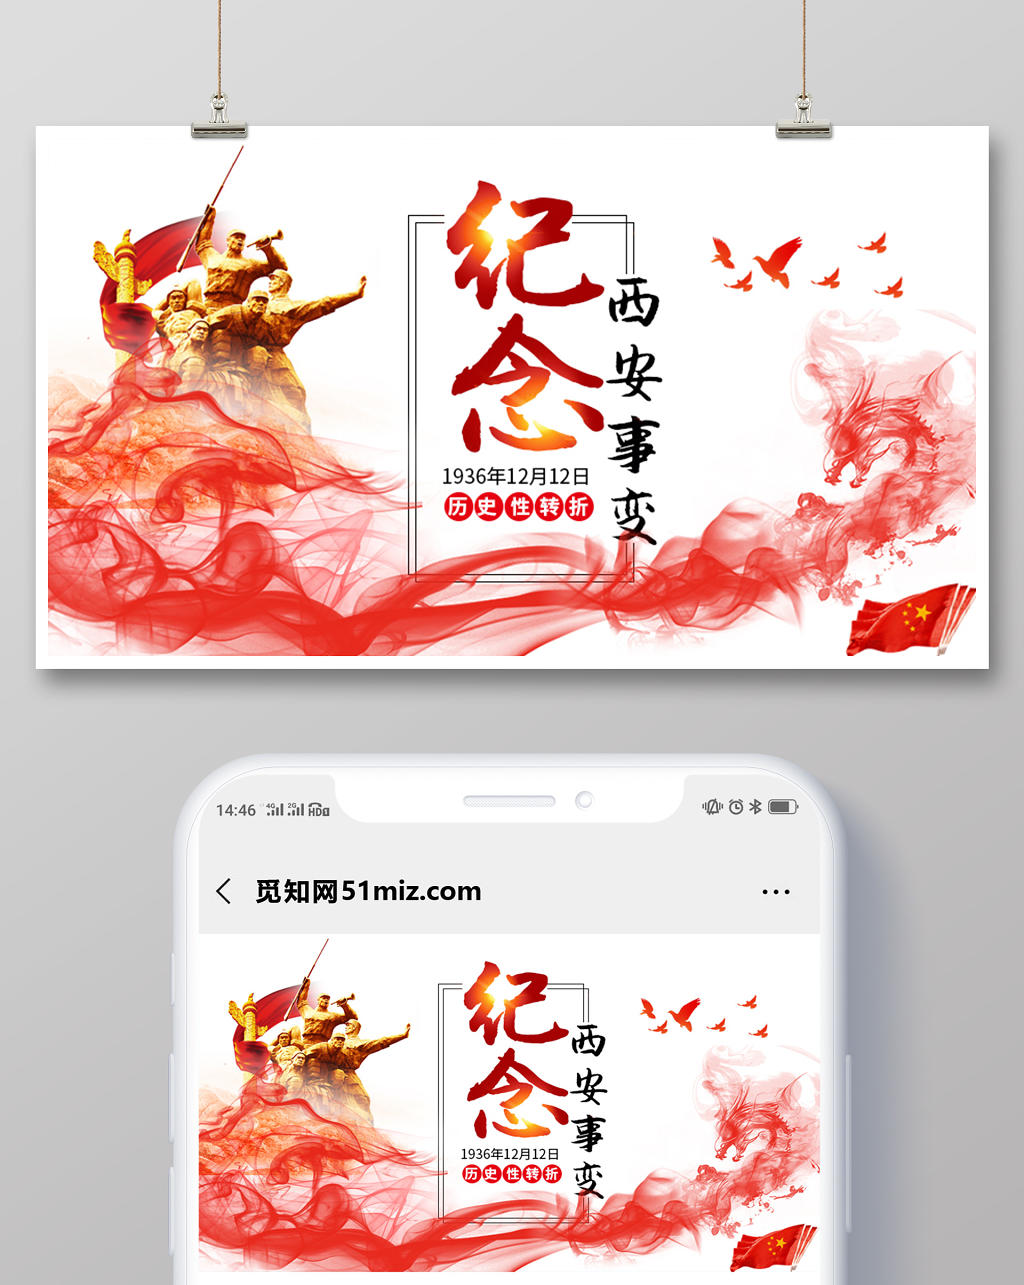 封面微信公众号首图西安事变纪念日红色革命剪影革命纪念日